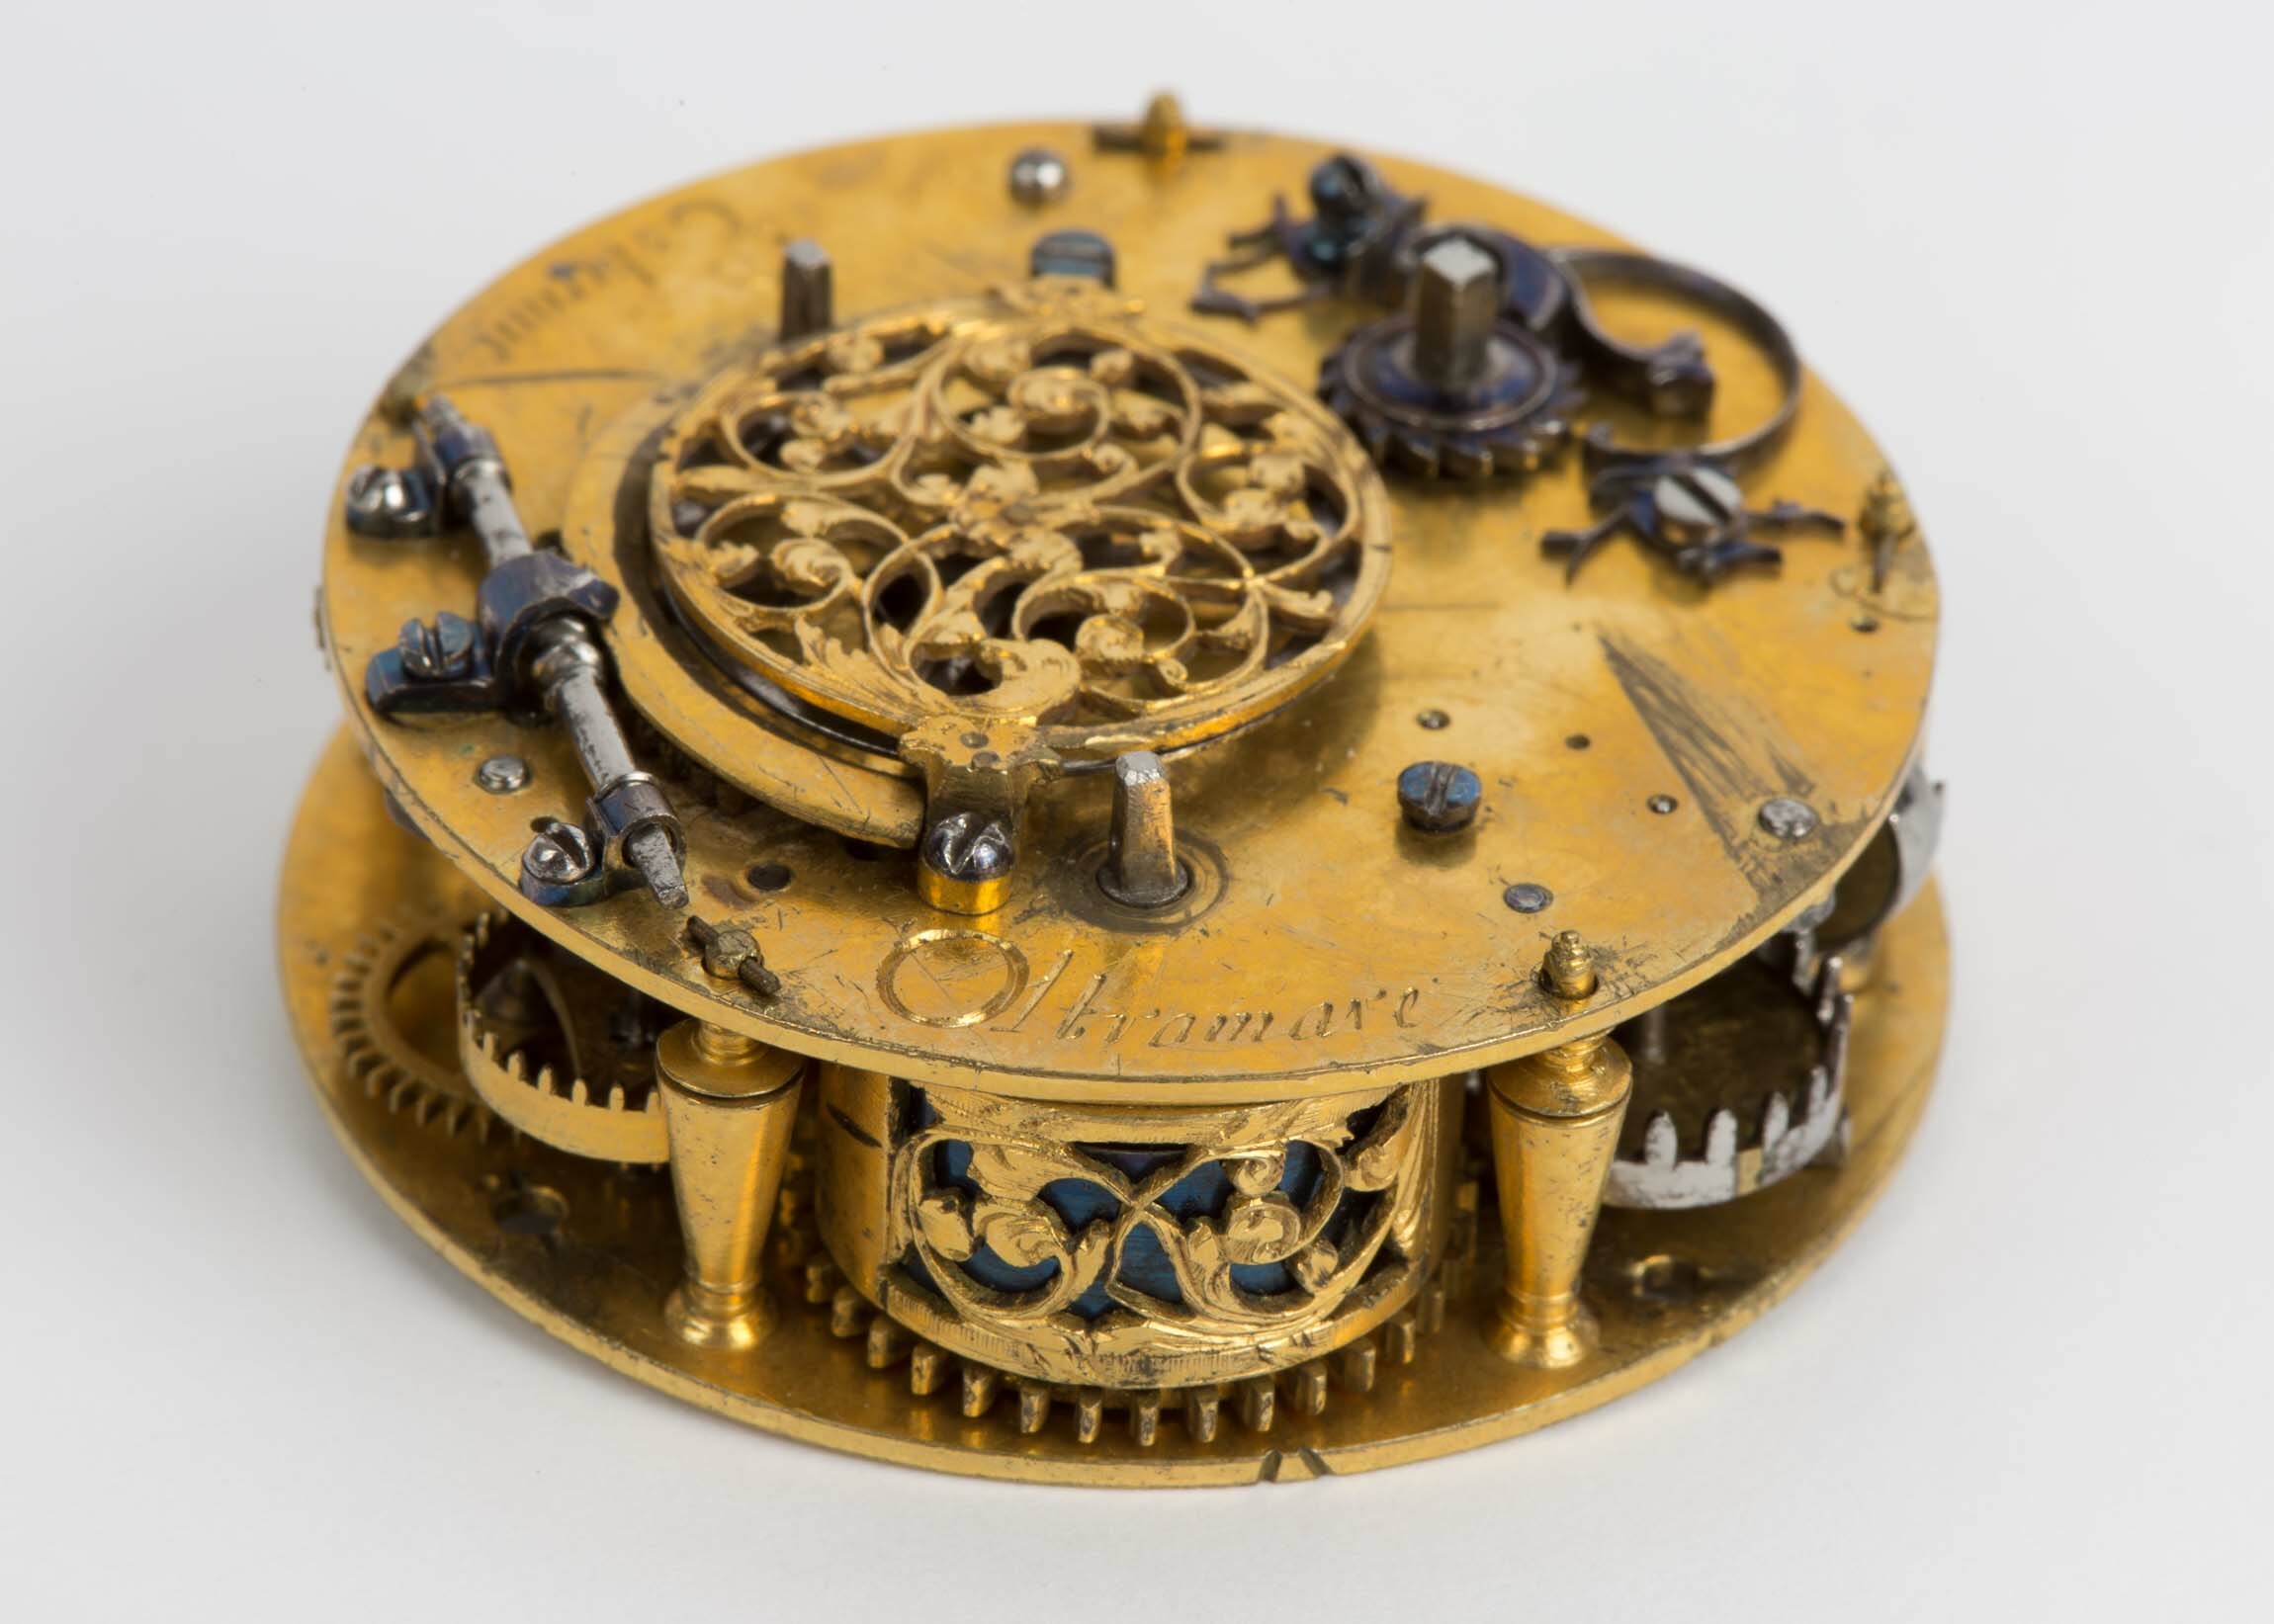 Taschenuhr, Etienne Oltramare, Genf, um 1675 (Deutsches Uhrenmuseum CC BY-SA)